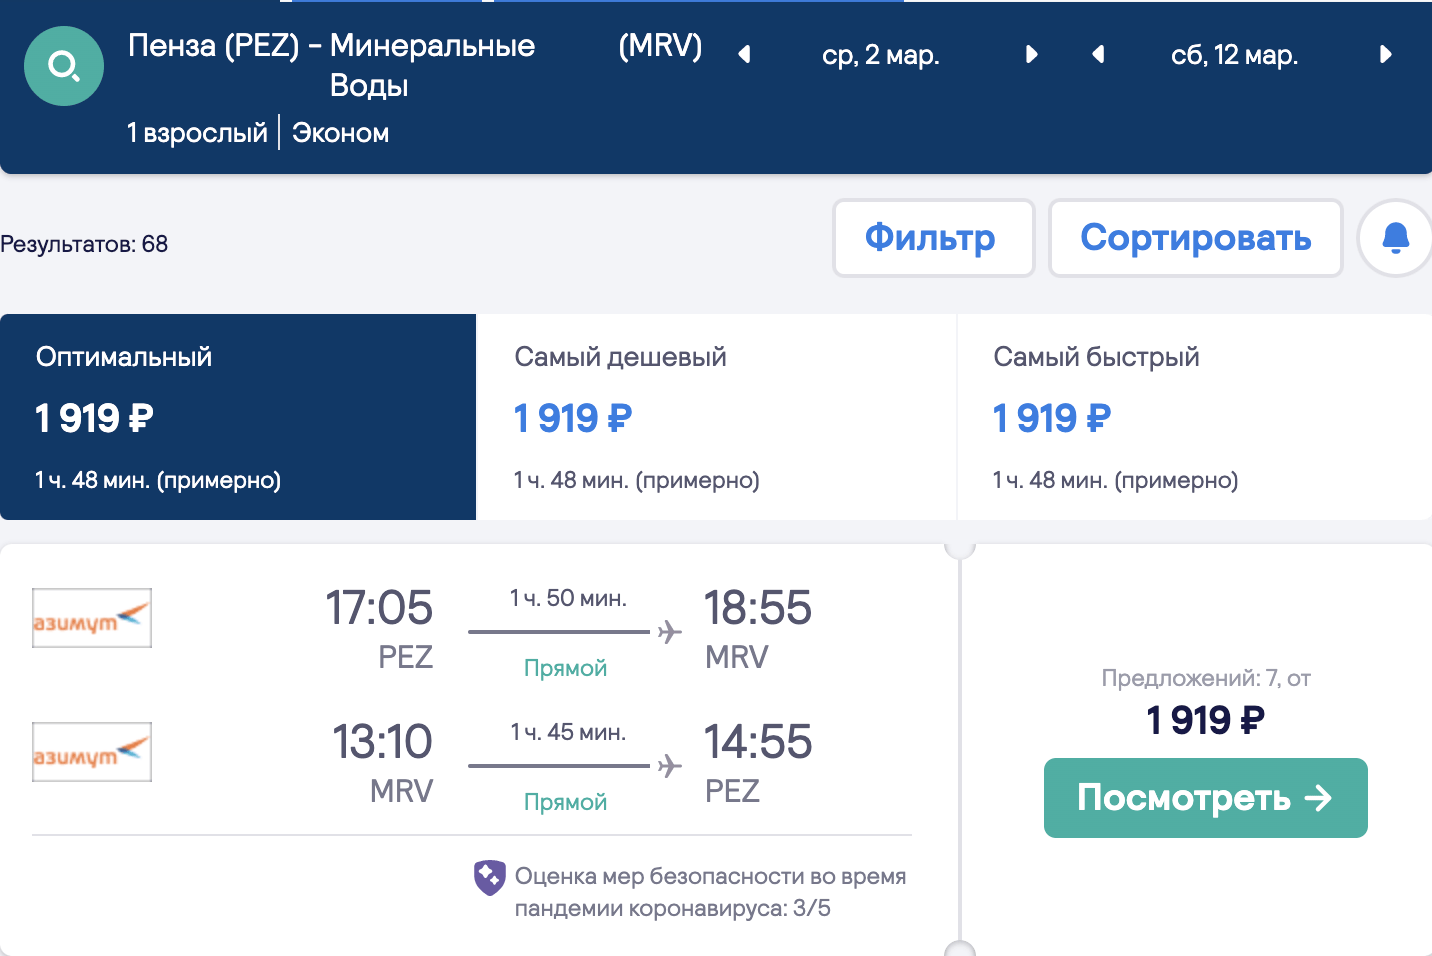 Veľký výber lacných letov z regiónov do Krasnodar a Minvody od 1800₽ tam a späť